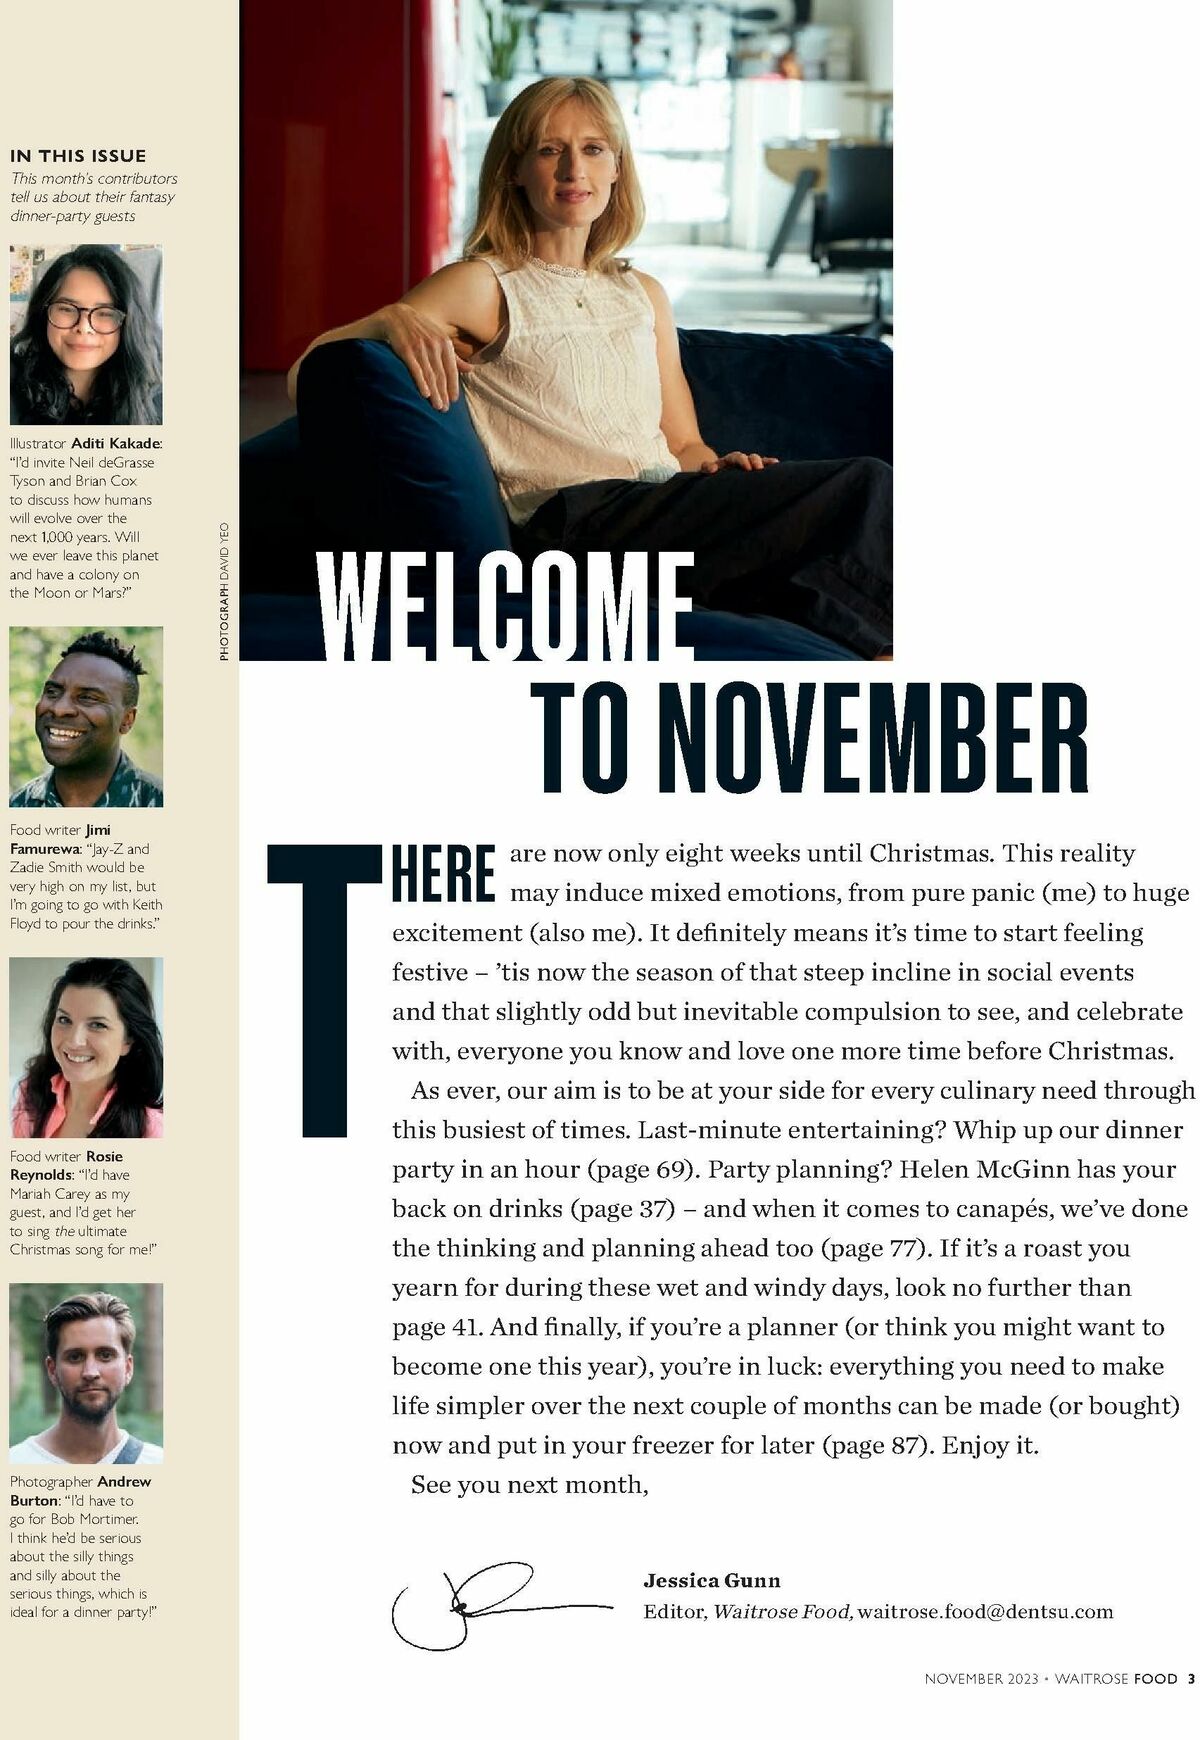 Waitrose Food Magazine November Offers from 1 November